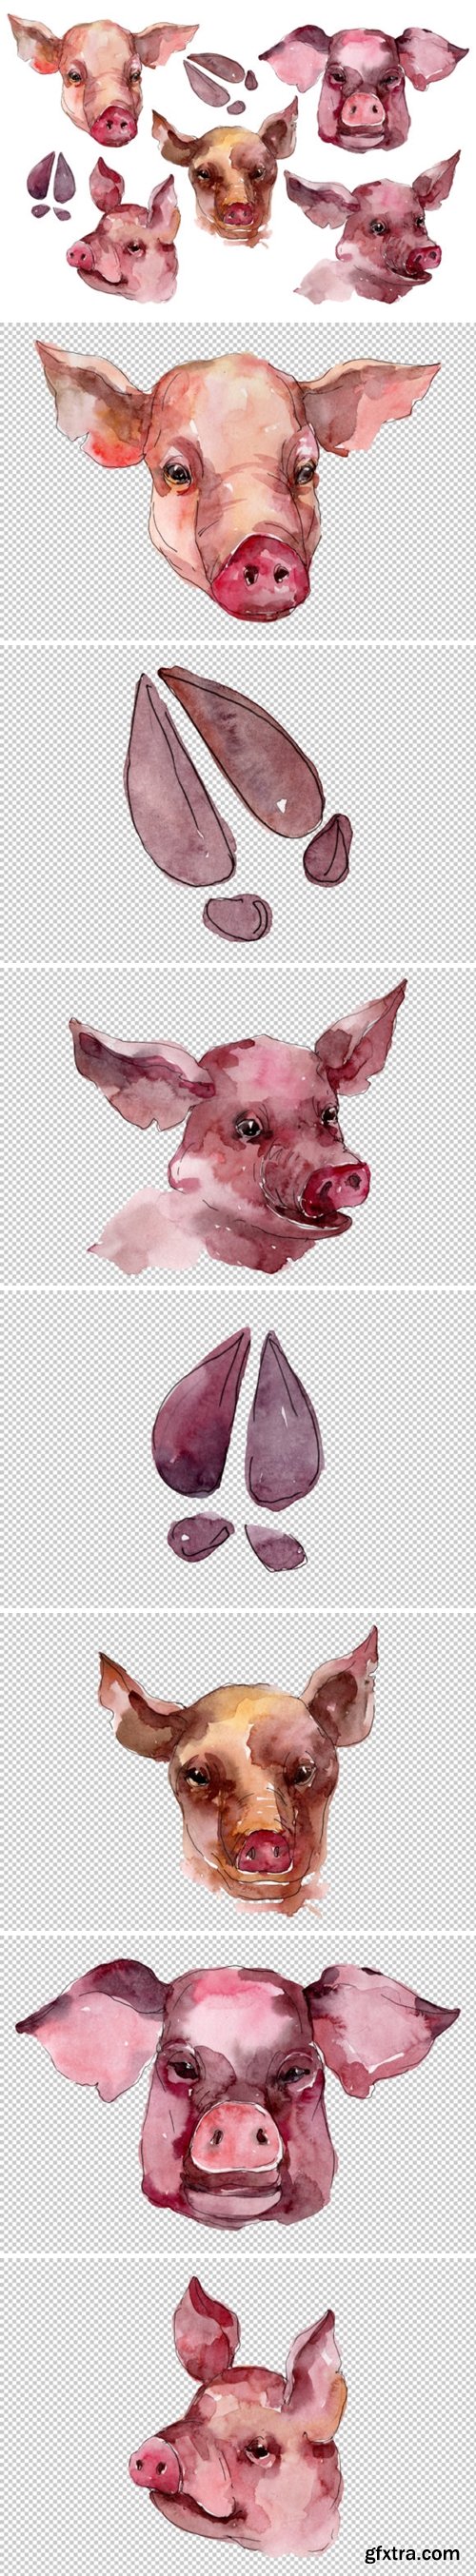 CM - Farm animals: pig head Watercolor png 3744882